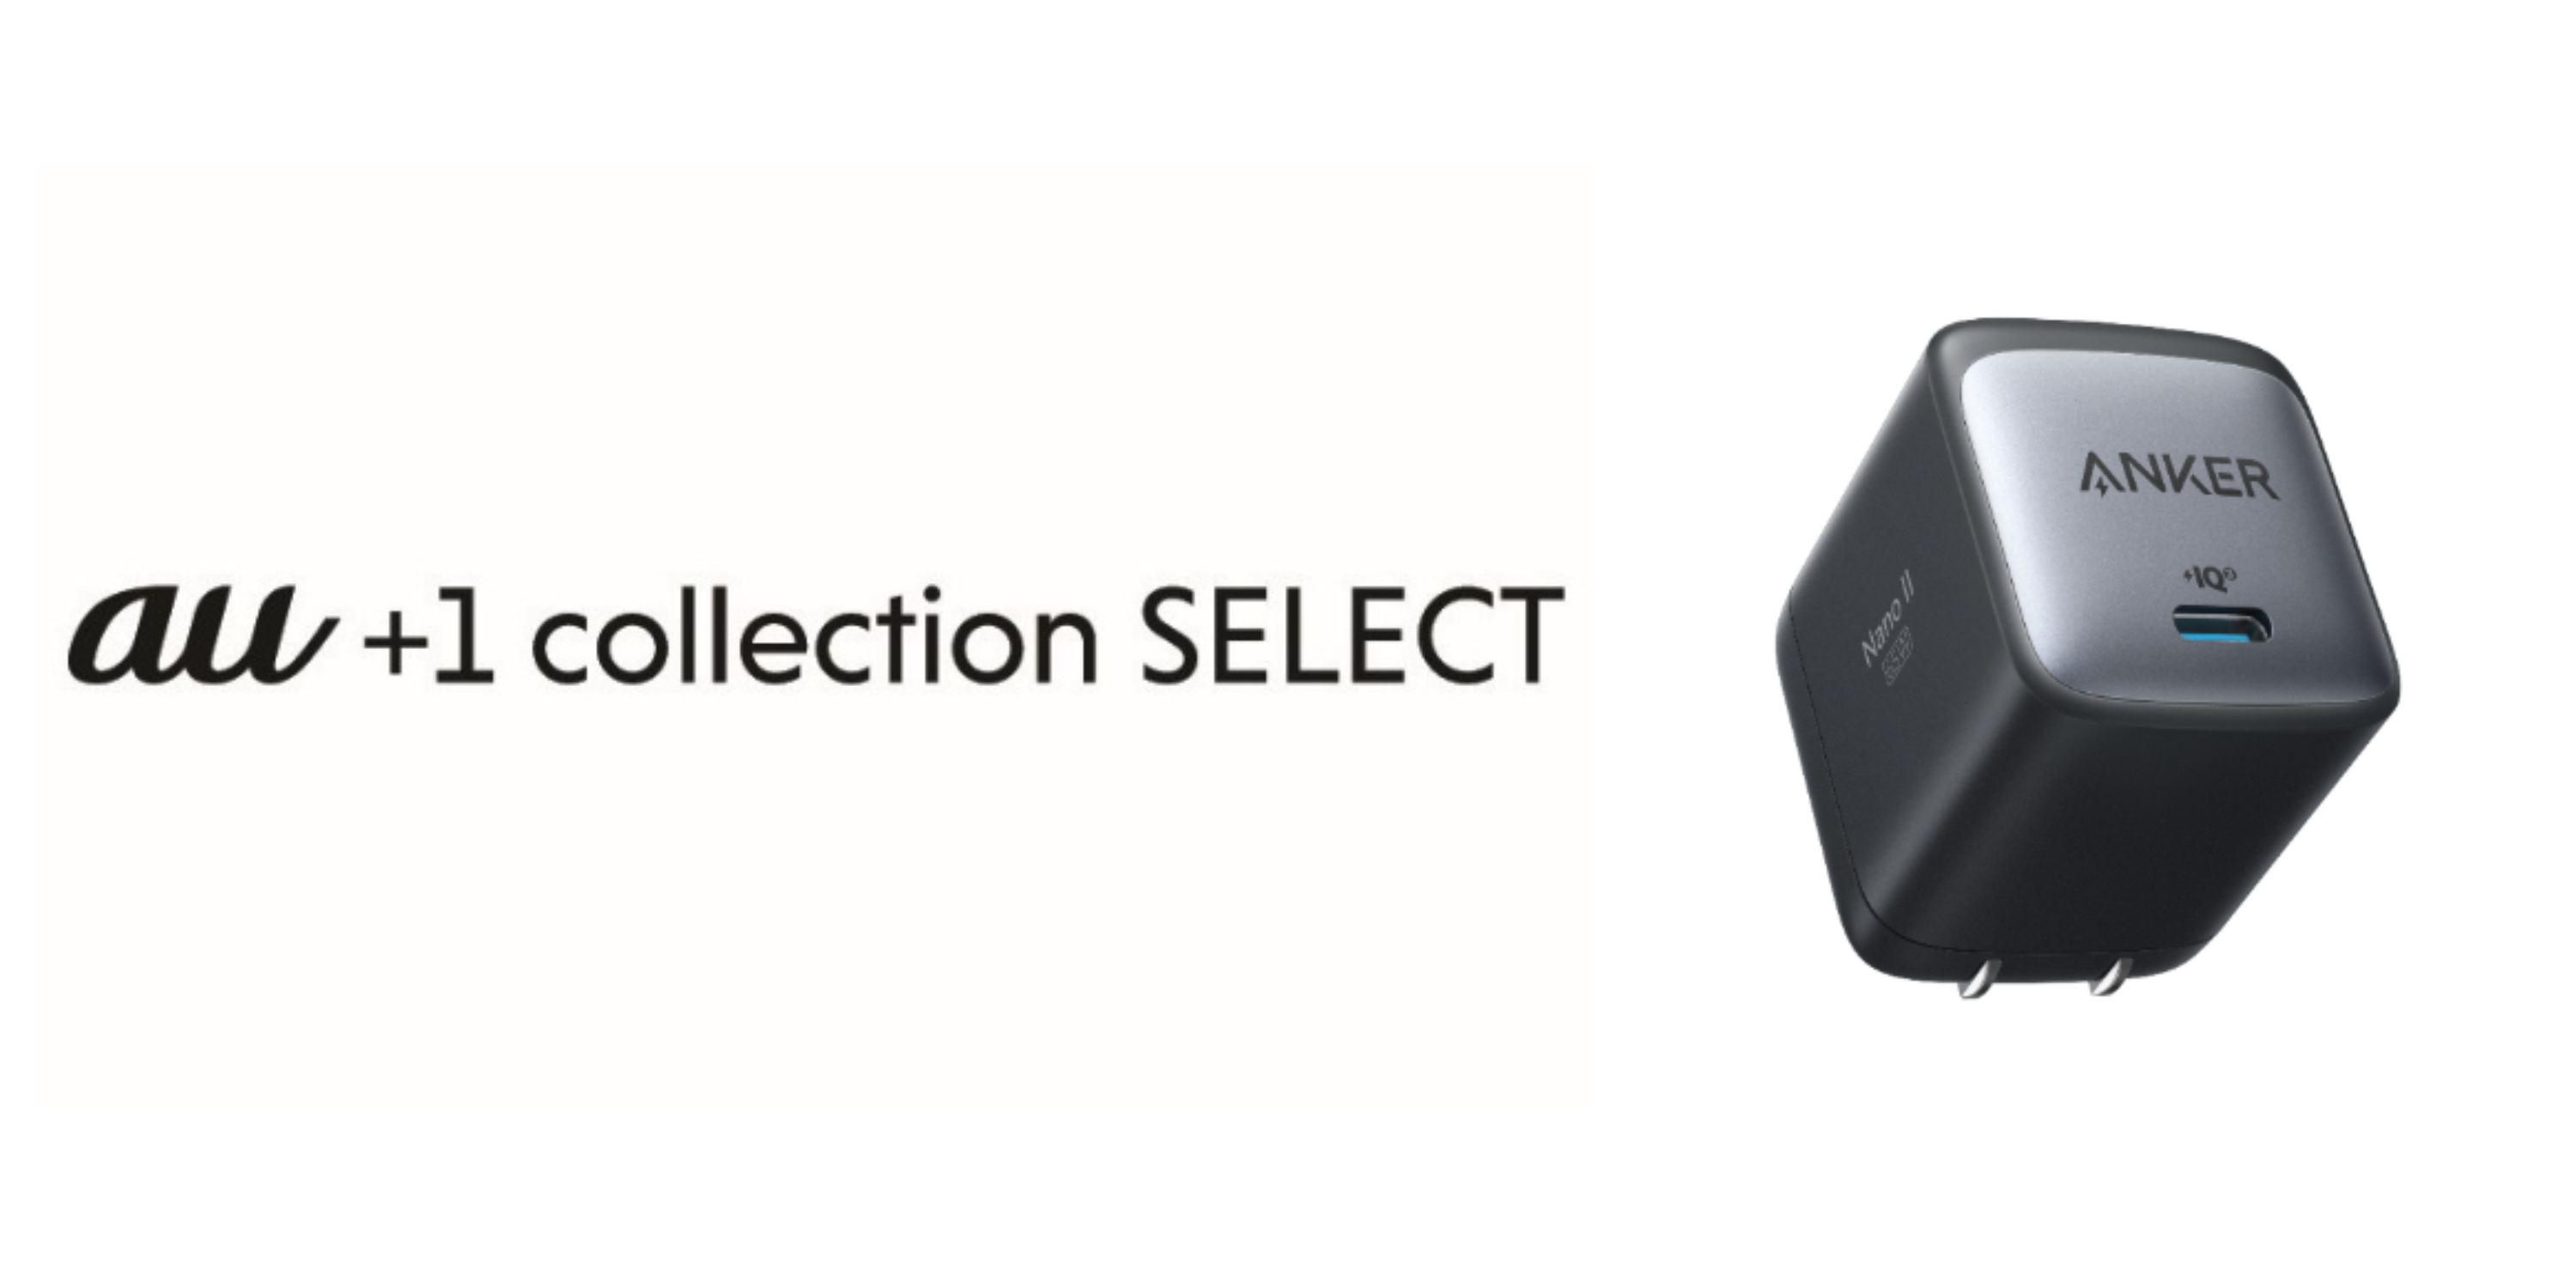 アンカーとauがコラボ、USB急速充電器「Anker Nano II 65W」が「au+1 collection SELECT」にて発売 - ケータイ  Watch